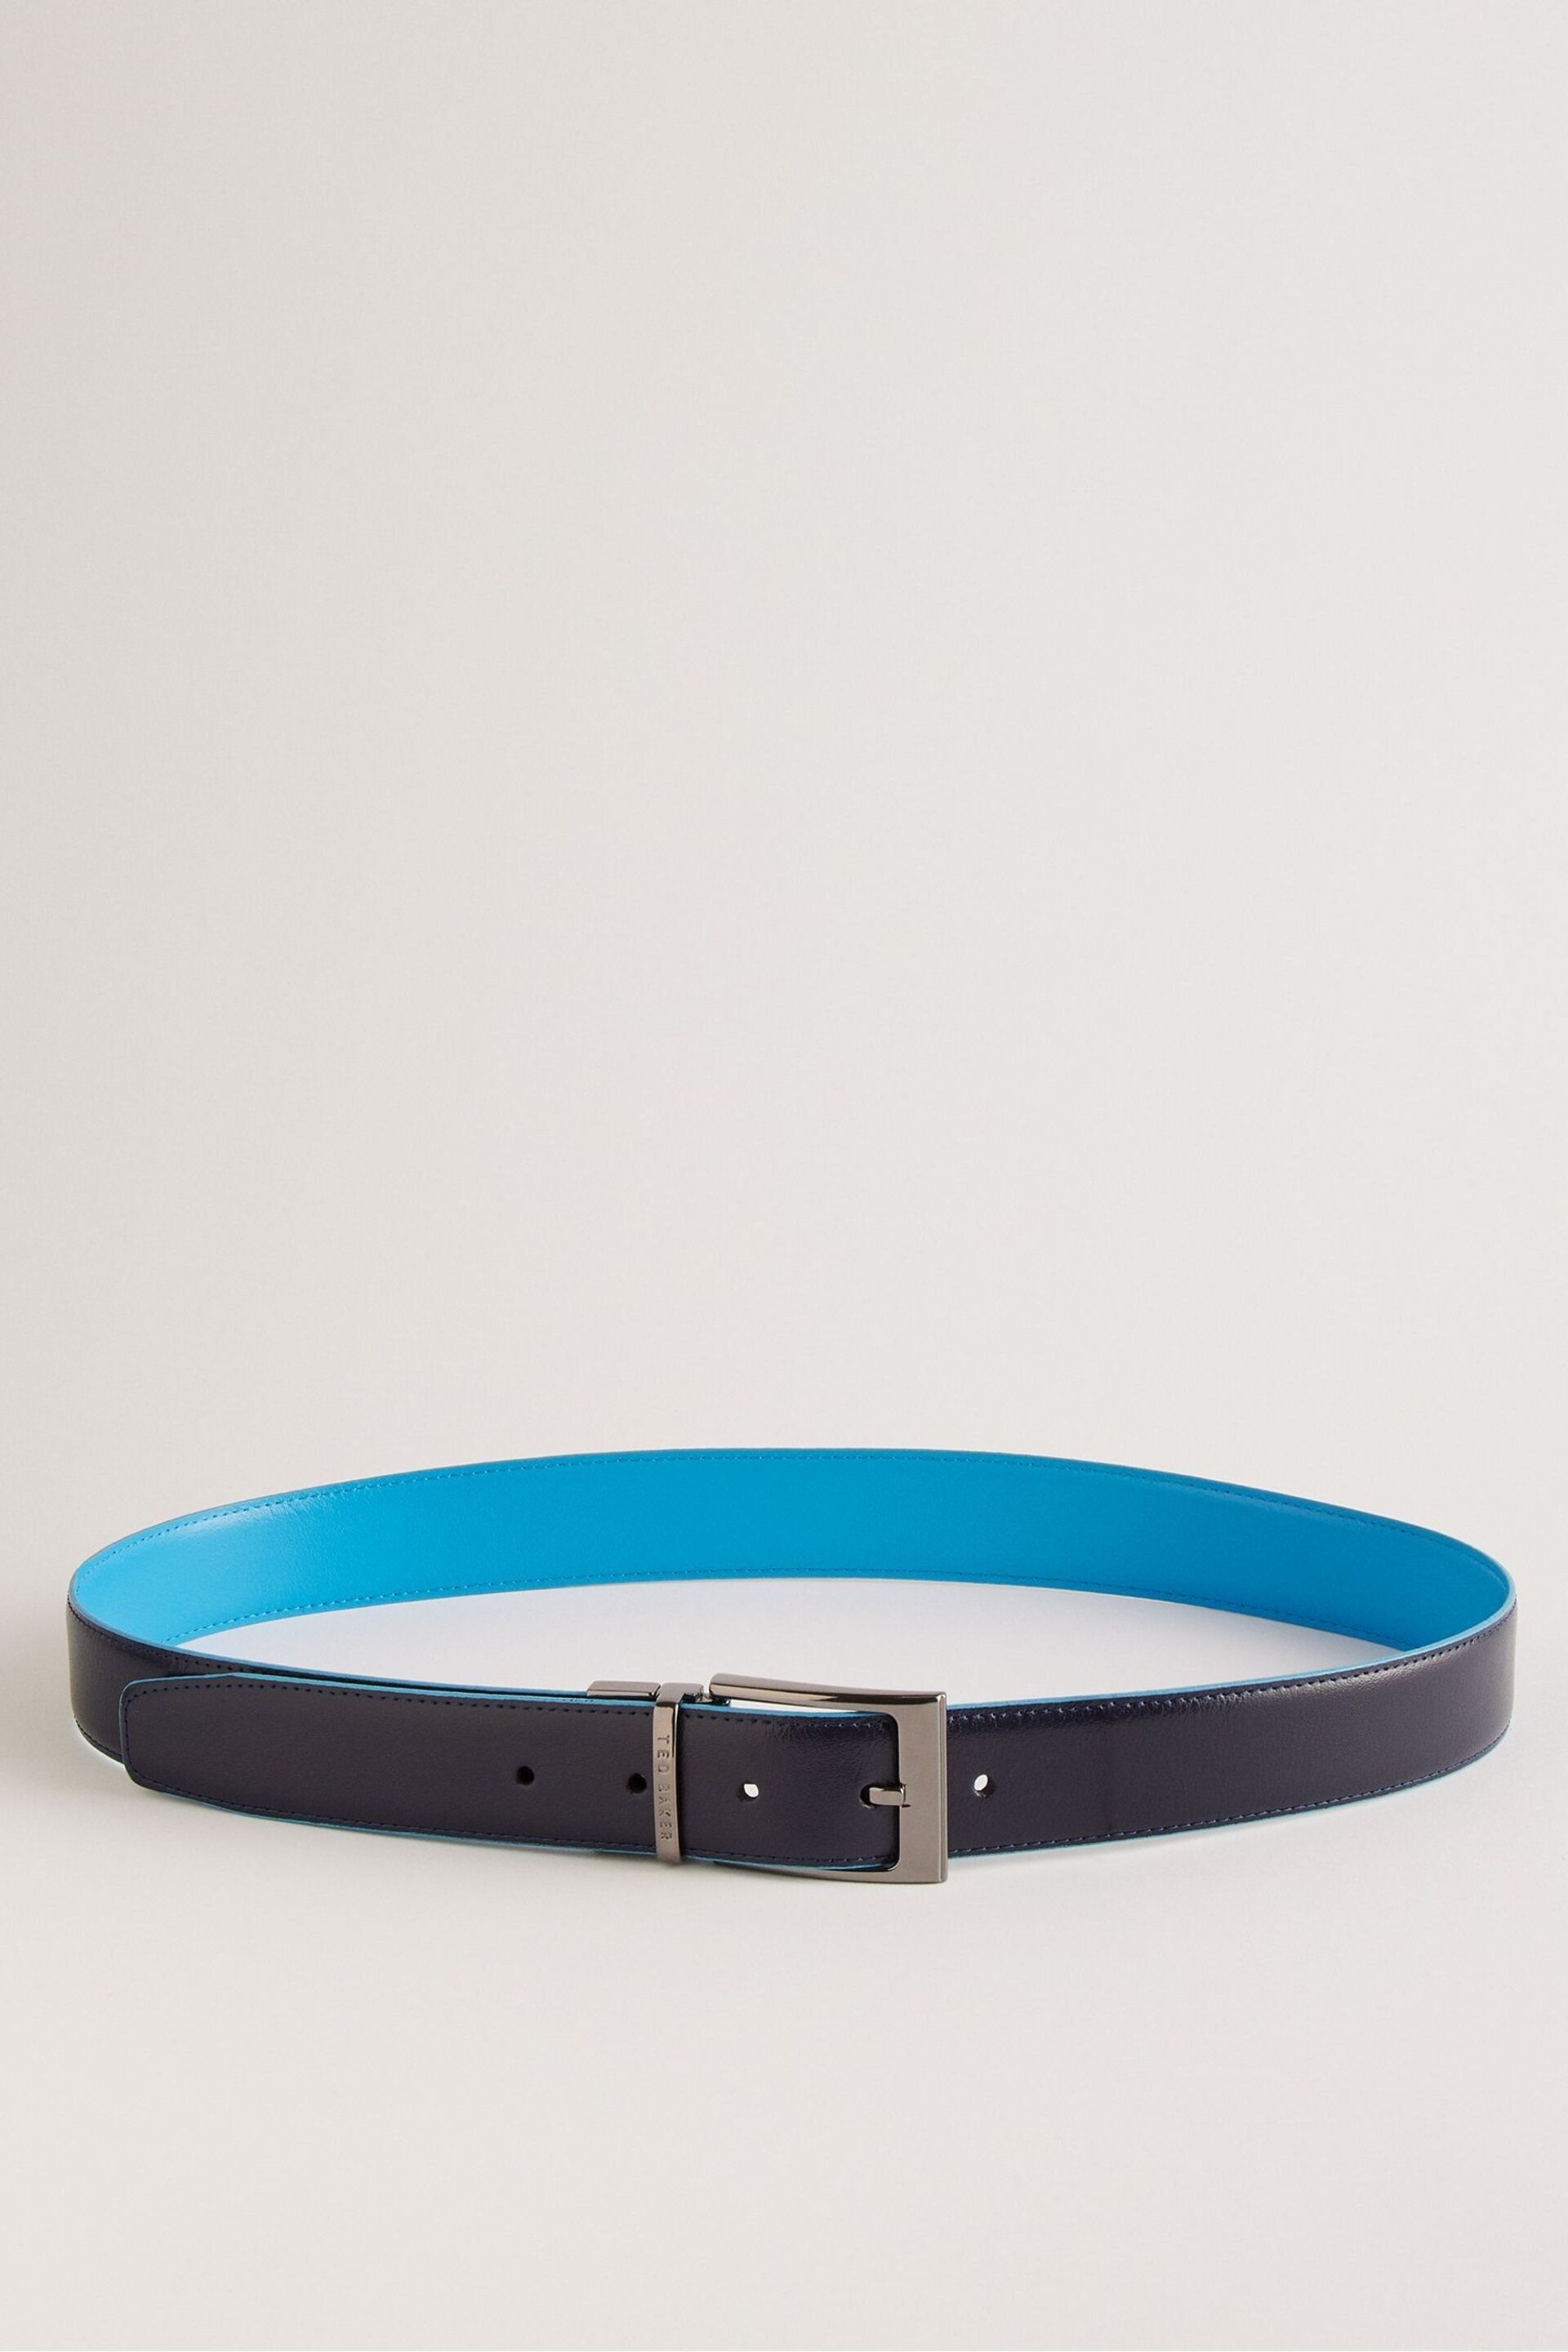 Ted Baker Blue Kacin Reversible Colour Pop Leather Belt - Image 1 of 3